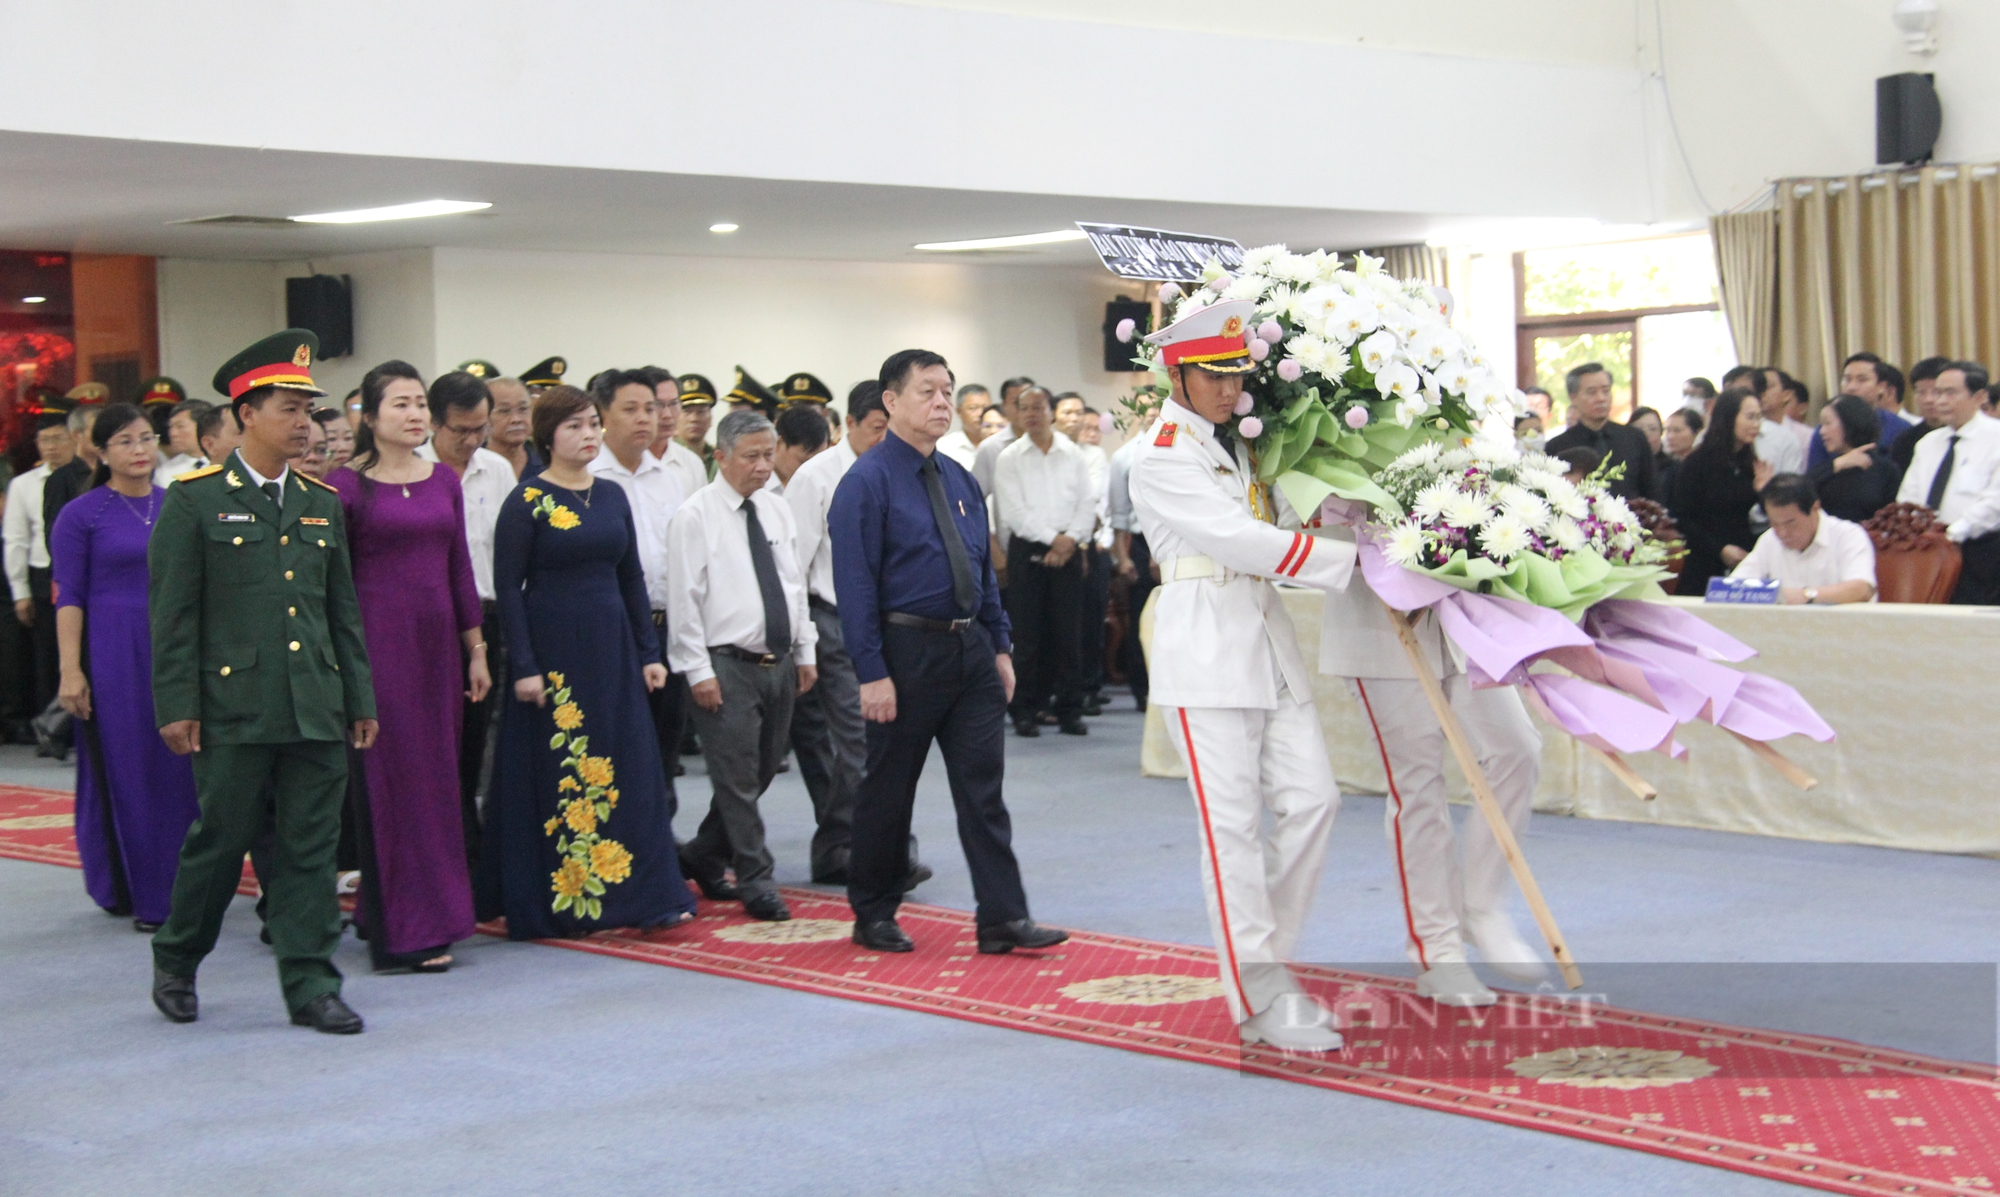 Đang diễn ra tang lễ nguyên Trưởng Ban Tổ chức T.Ư Lê Phước Thọ - Ảnh 5.